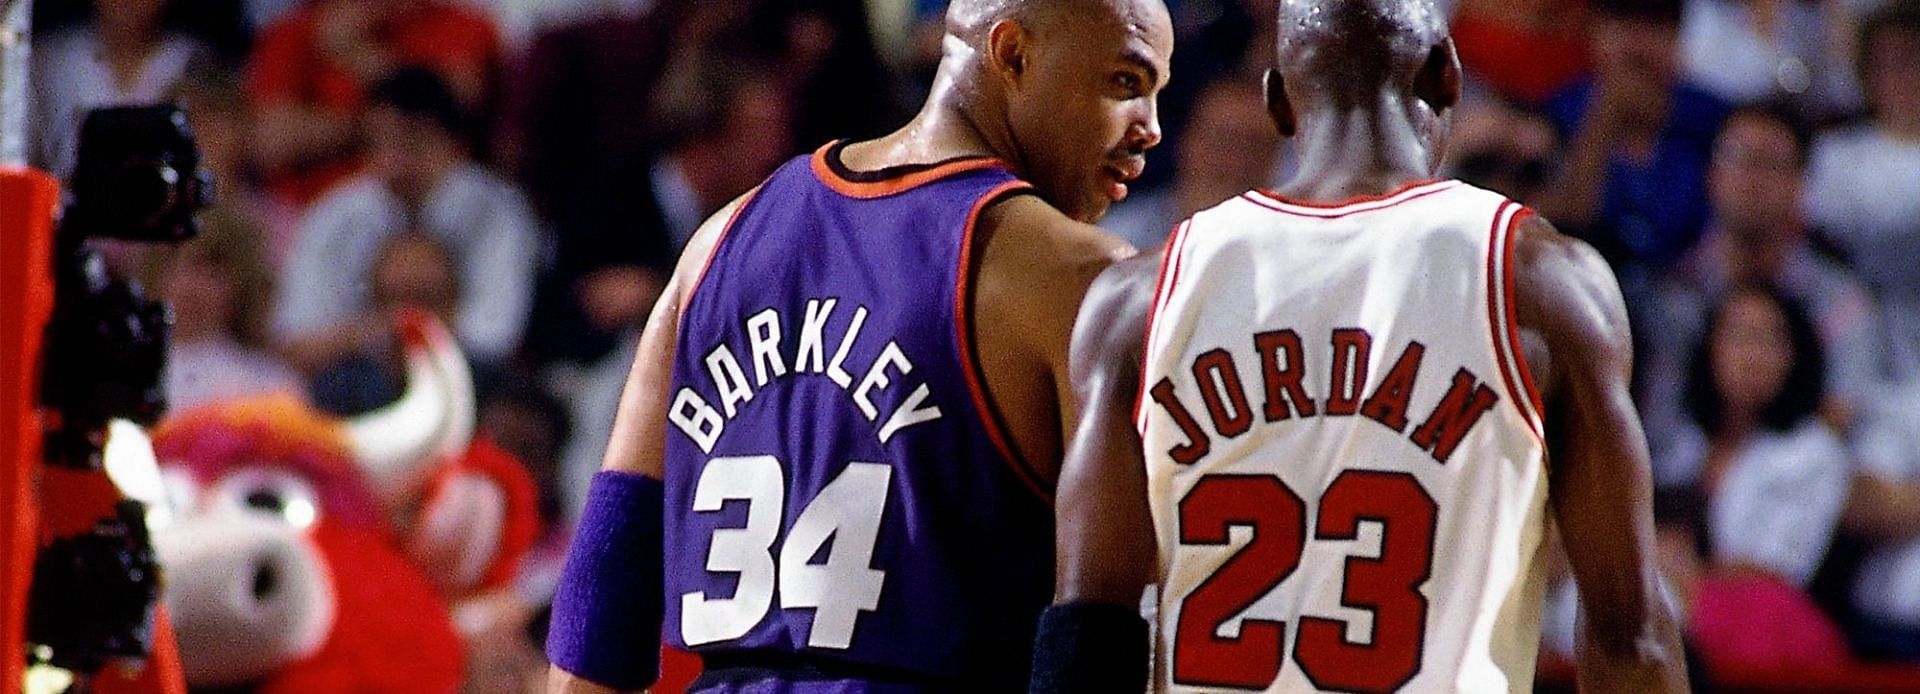 Charles Barkley and Michael Jordan at the 1993 NBA Finals